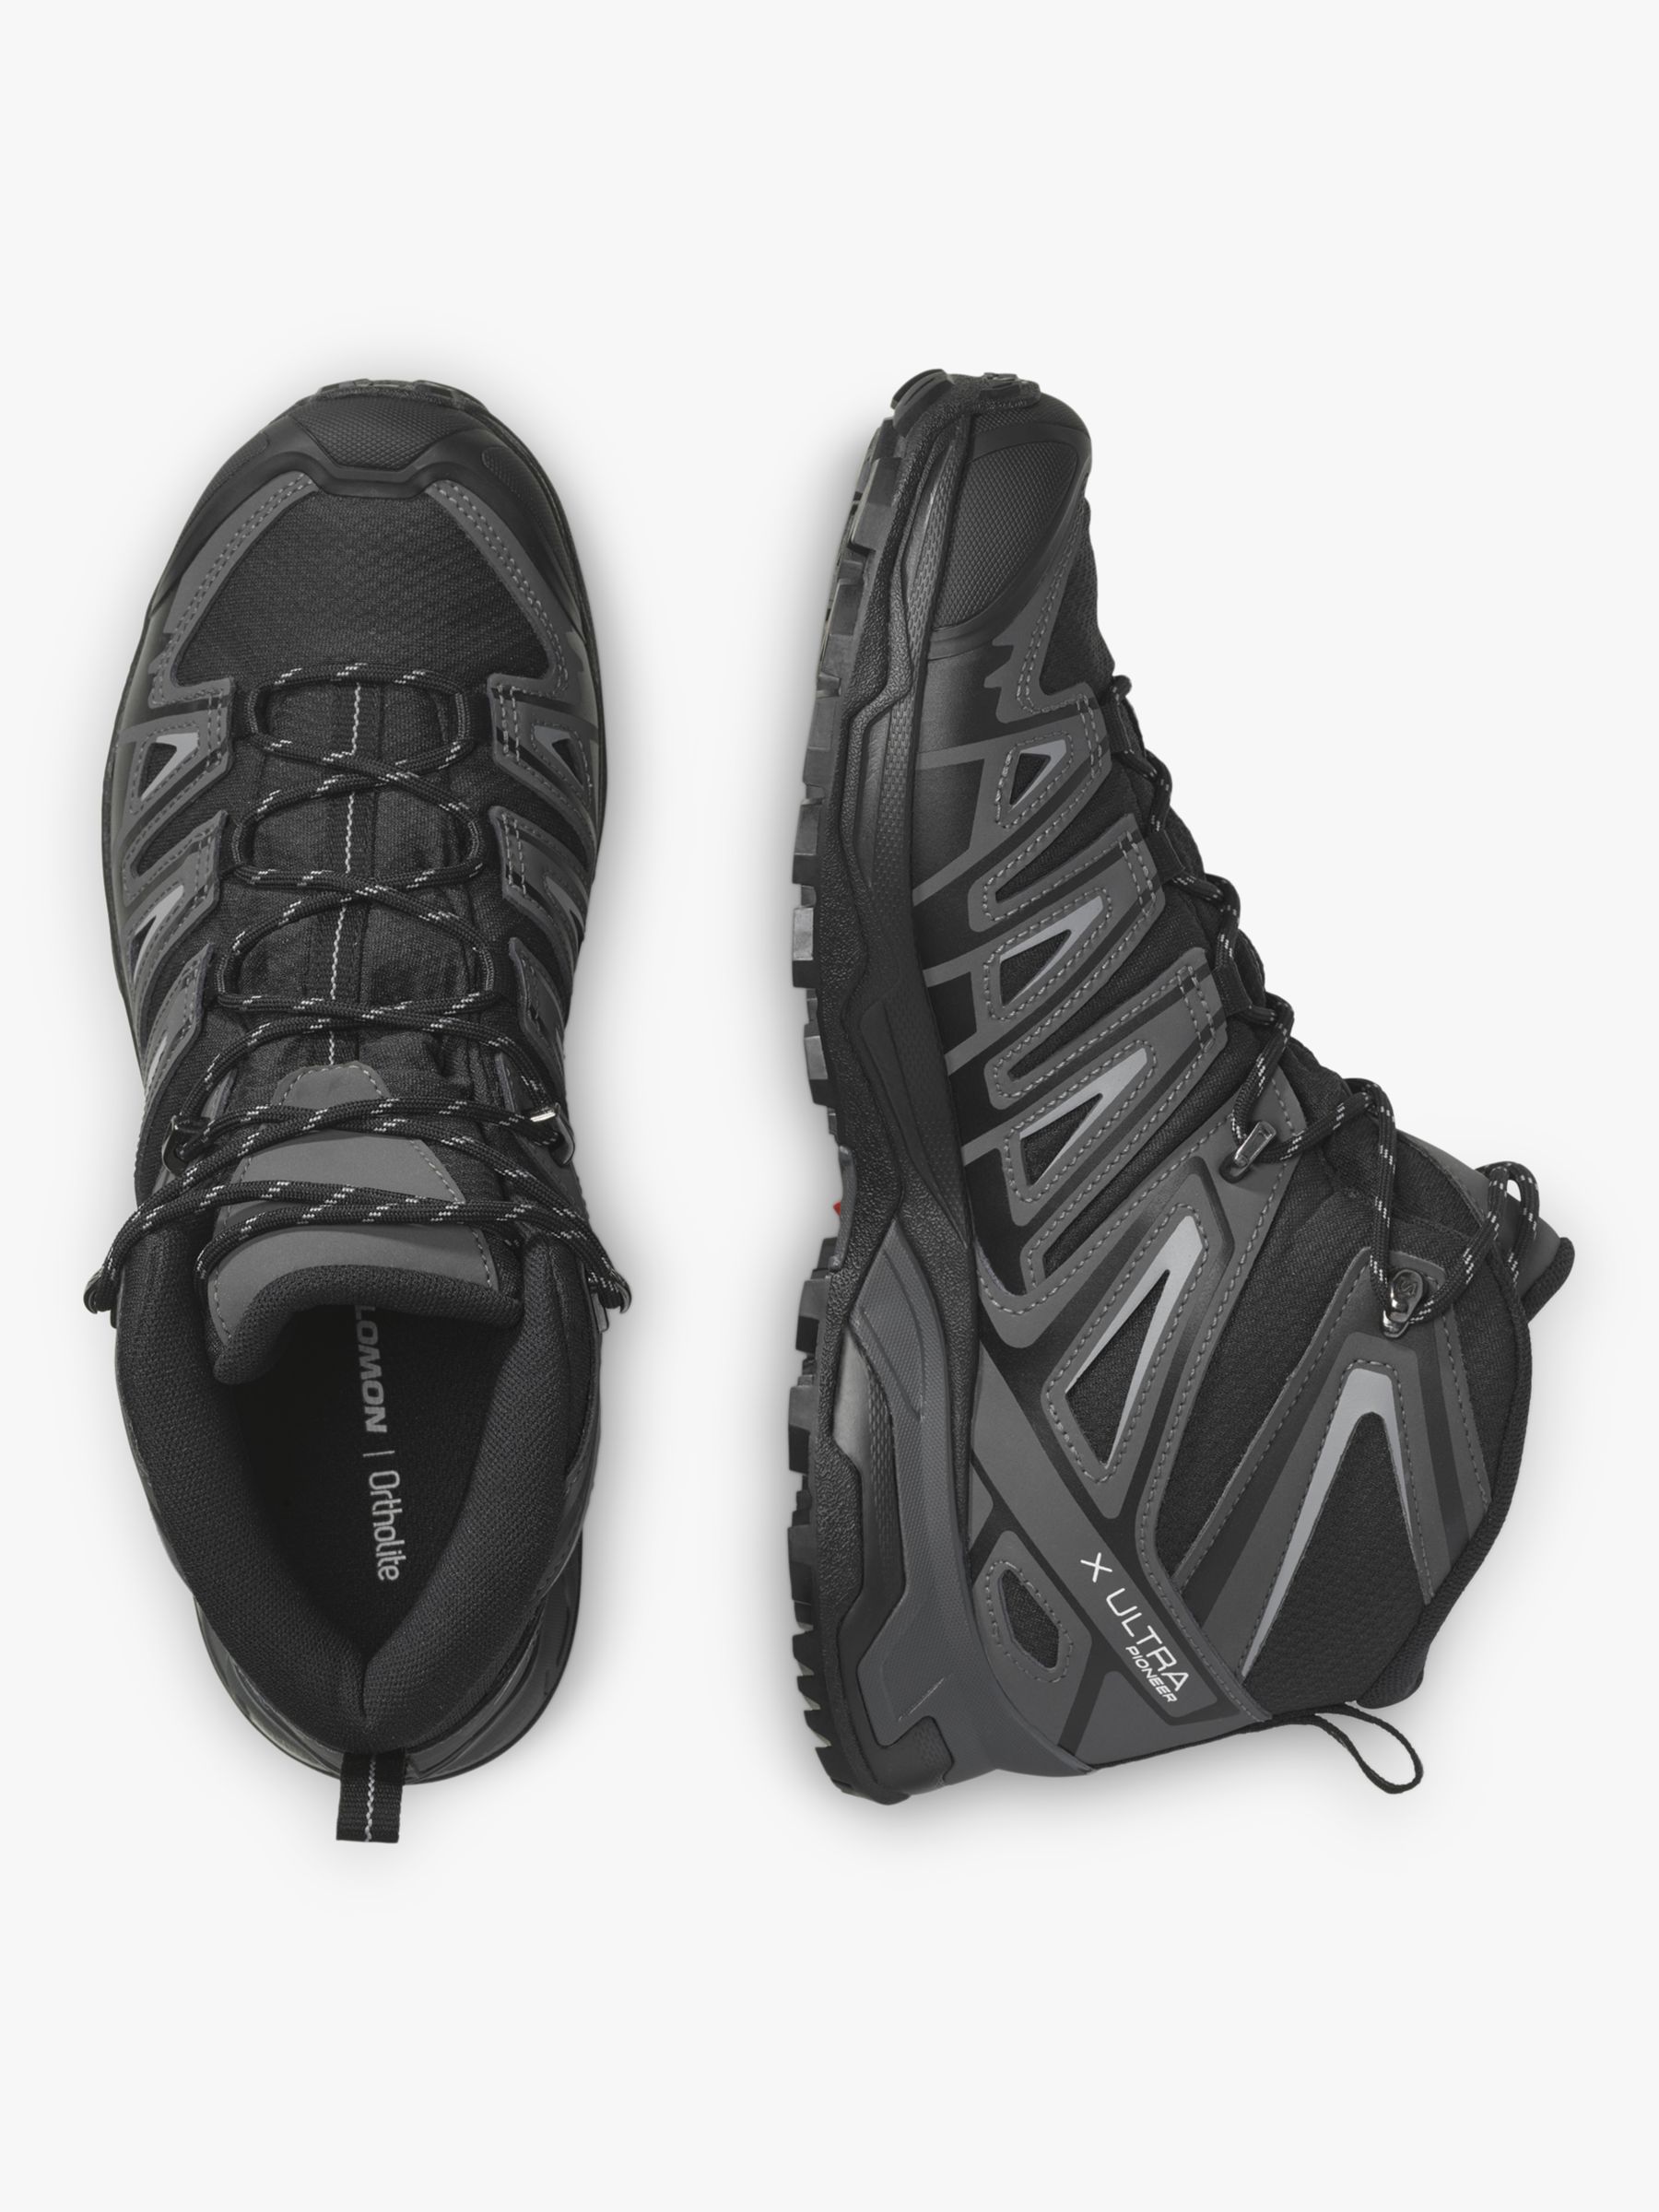 Salomon X Ultra Pioneer Mid Men's Waterproof Gore-Tex Hiking Shoes, Black/Magnet at John Lewis &